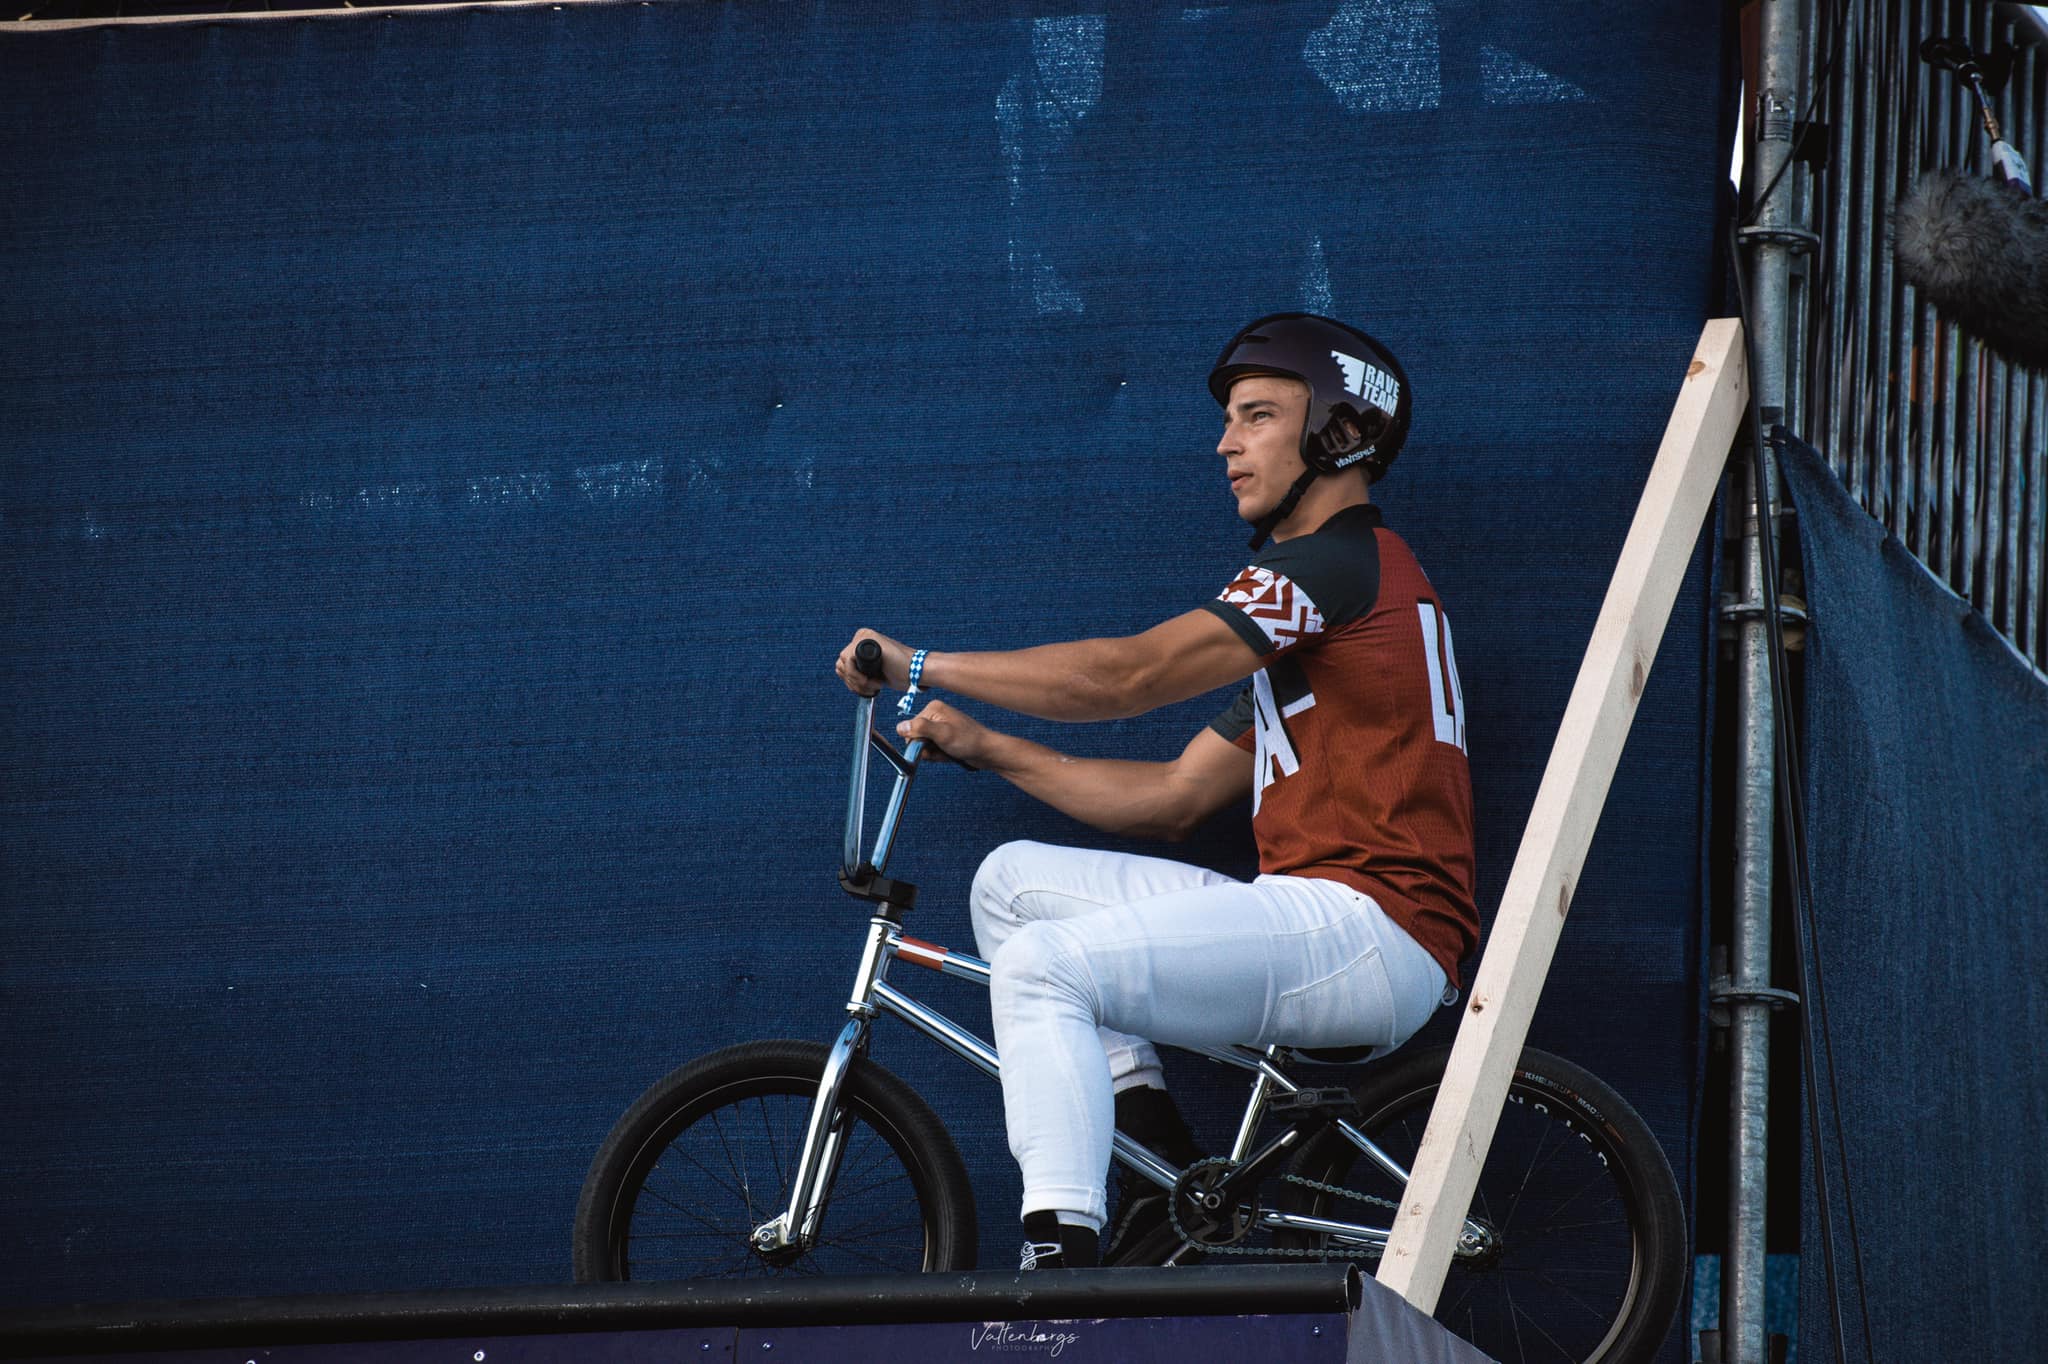 Zēbolds Pasaules kausa 1. posmā BMX frīstailā izcīna 14. vietu